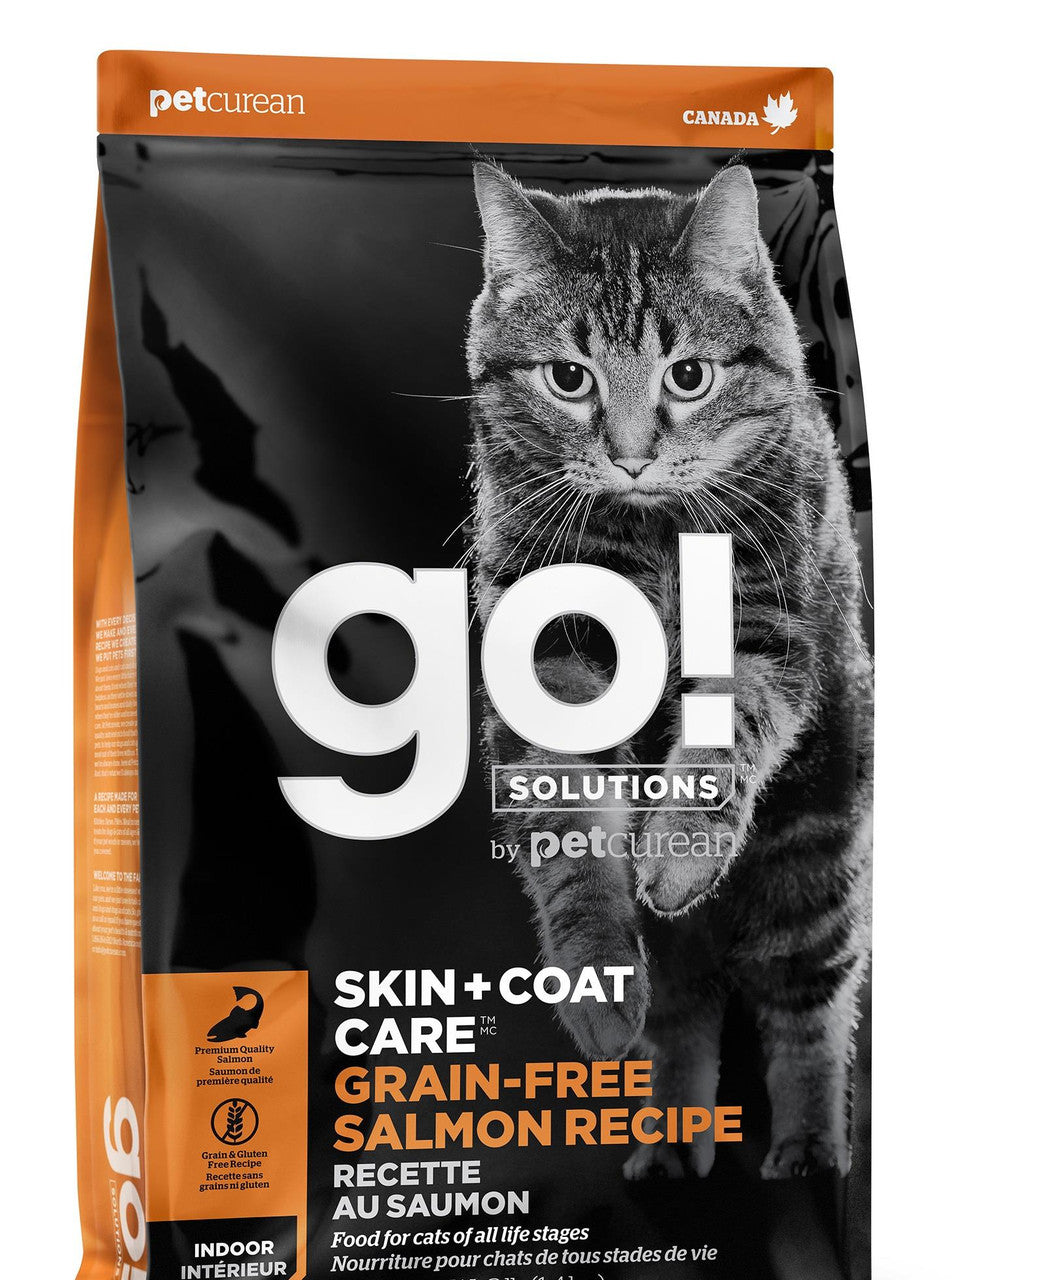 Petcurean Go! Skin & Coat Care Grain Free Salmon Recipe for cats 16lb {L-1}152232 815260005036